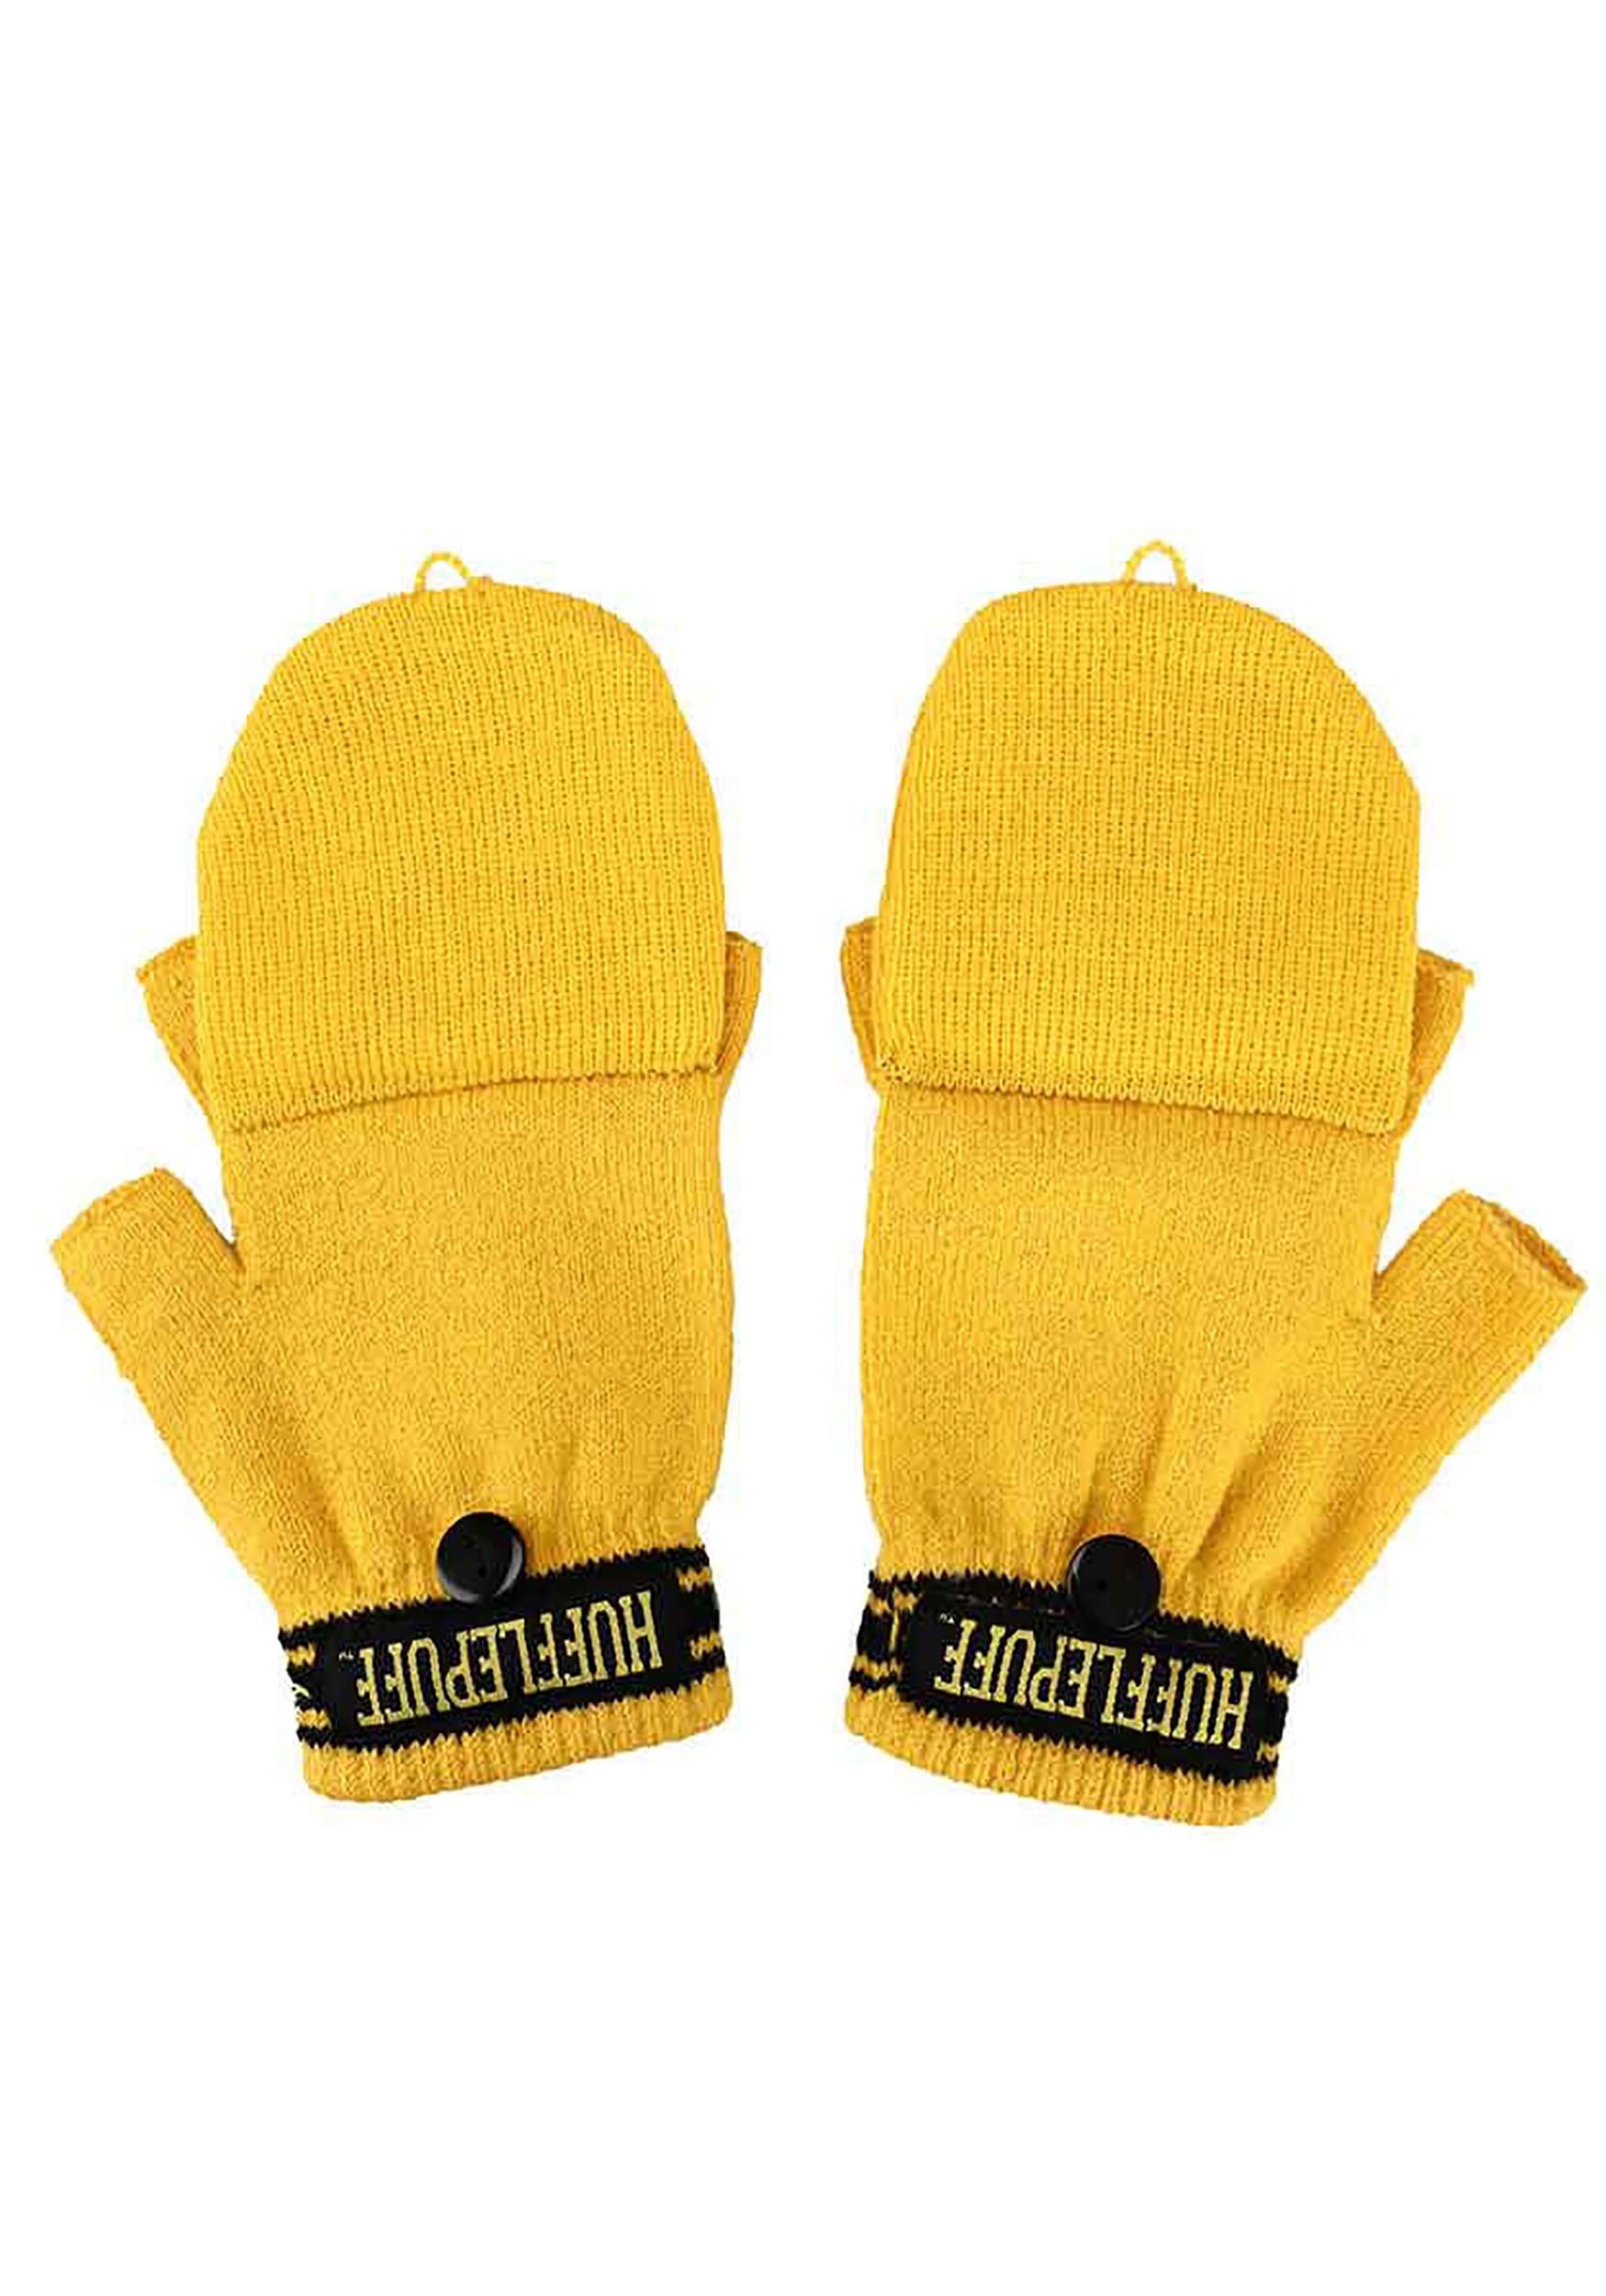 Hufflepuff Harry Potter Beanie & Fingerless Gloves With Mitten Flap Set